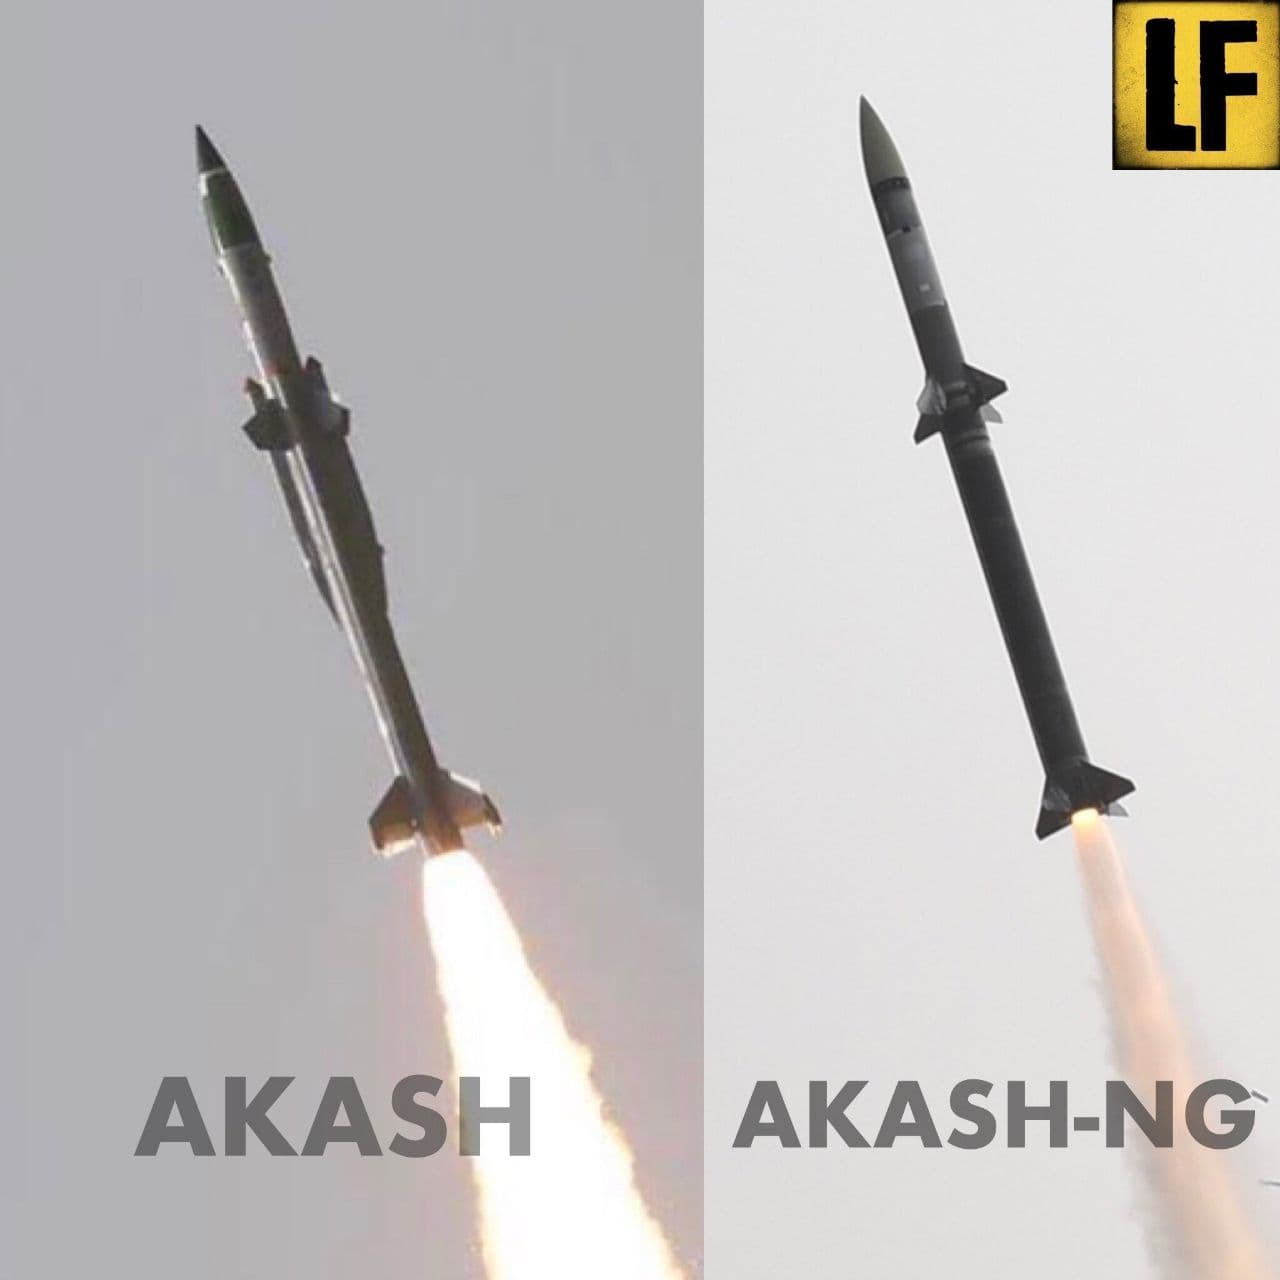 Difference between Akash and Akash NG